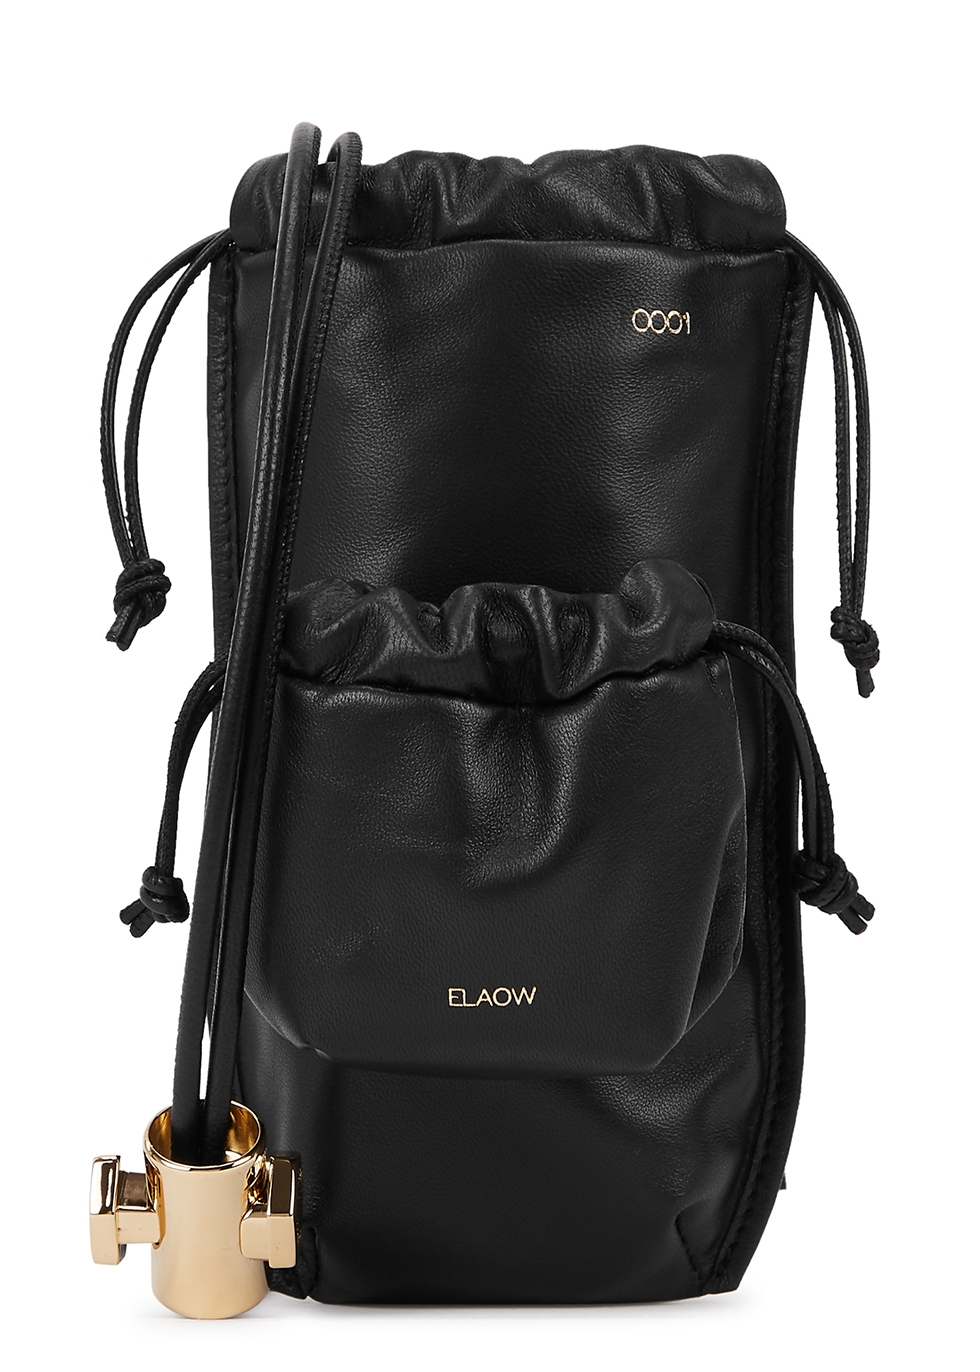 ELAOW Black leather portable pouch - Harvey Nichols